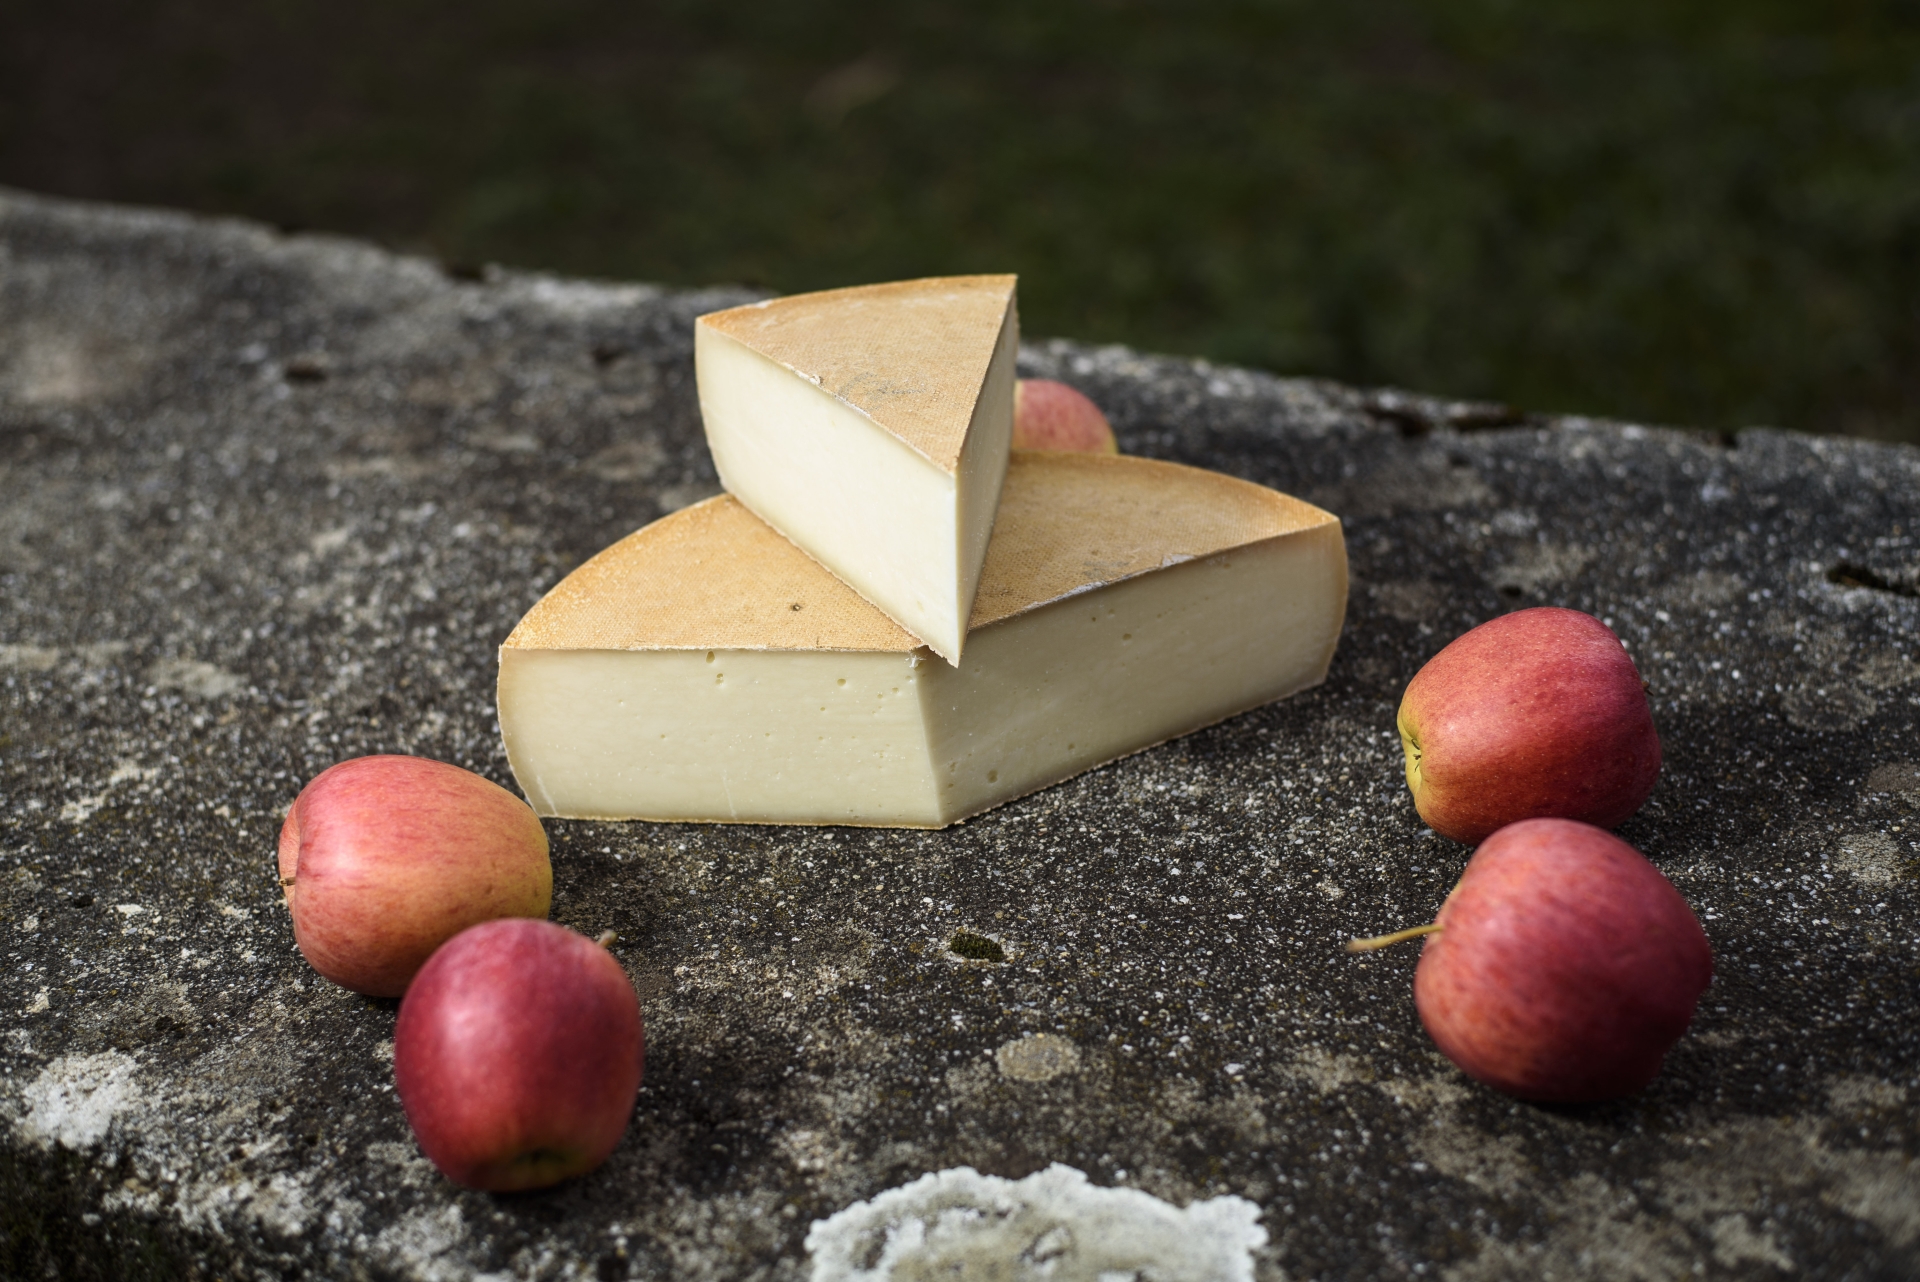 Le fromage de chèvre "La Biquette", élaboré par Serge Kusner à Gimel, a été primé au Concours suisse des produits du terroir.